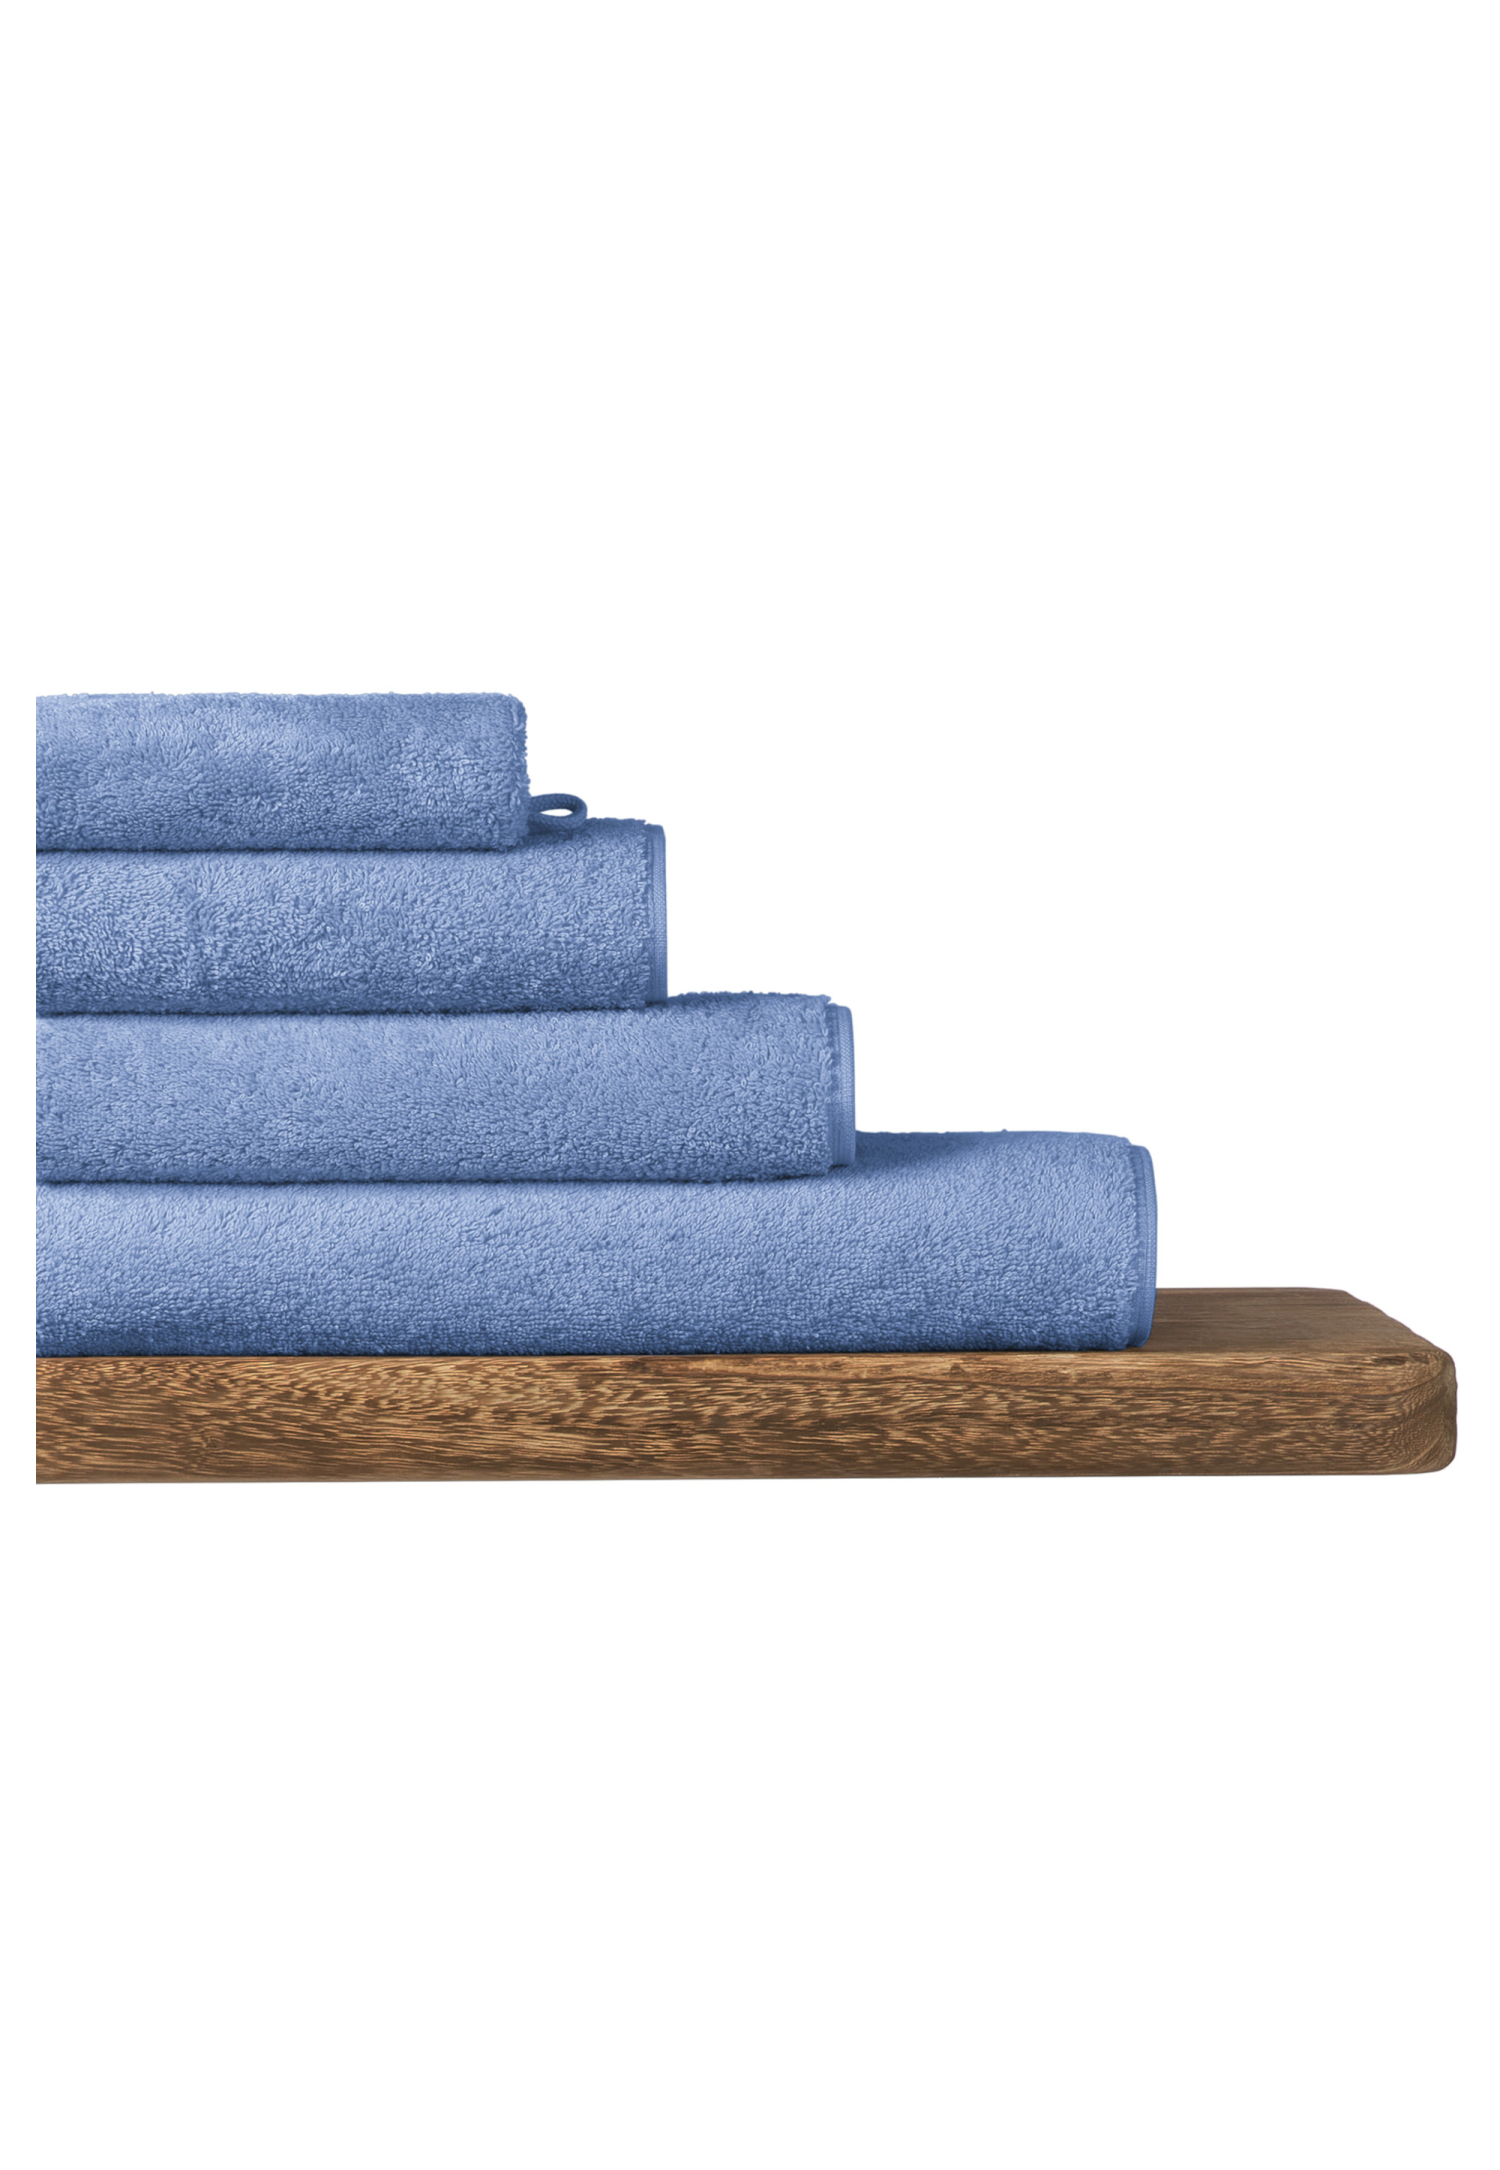 Schiesser Handdoek Milano 50 x 100 lichtblauw -  Home 